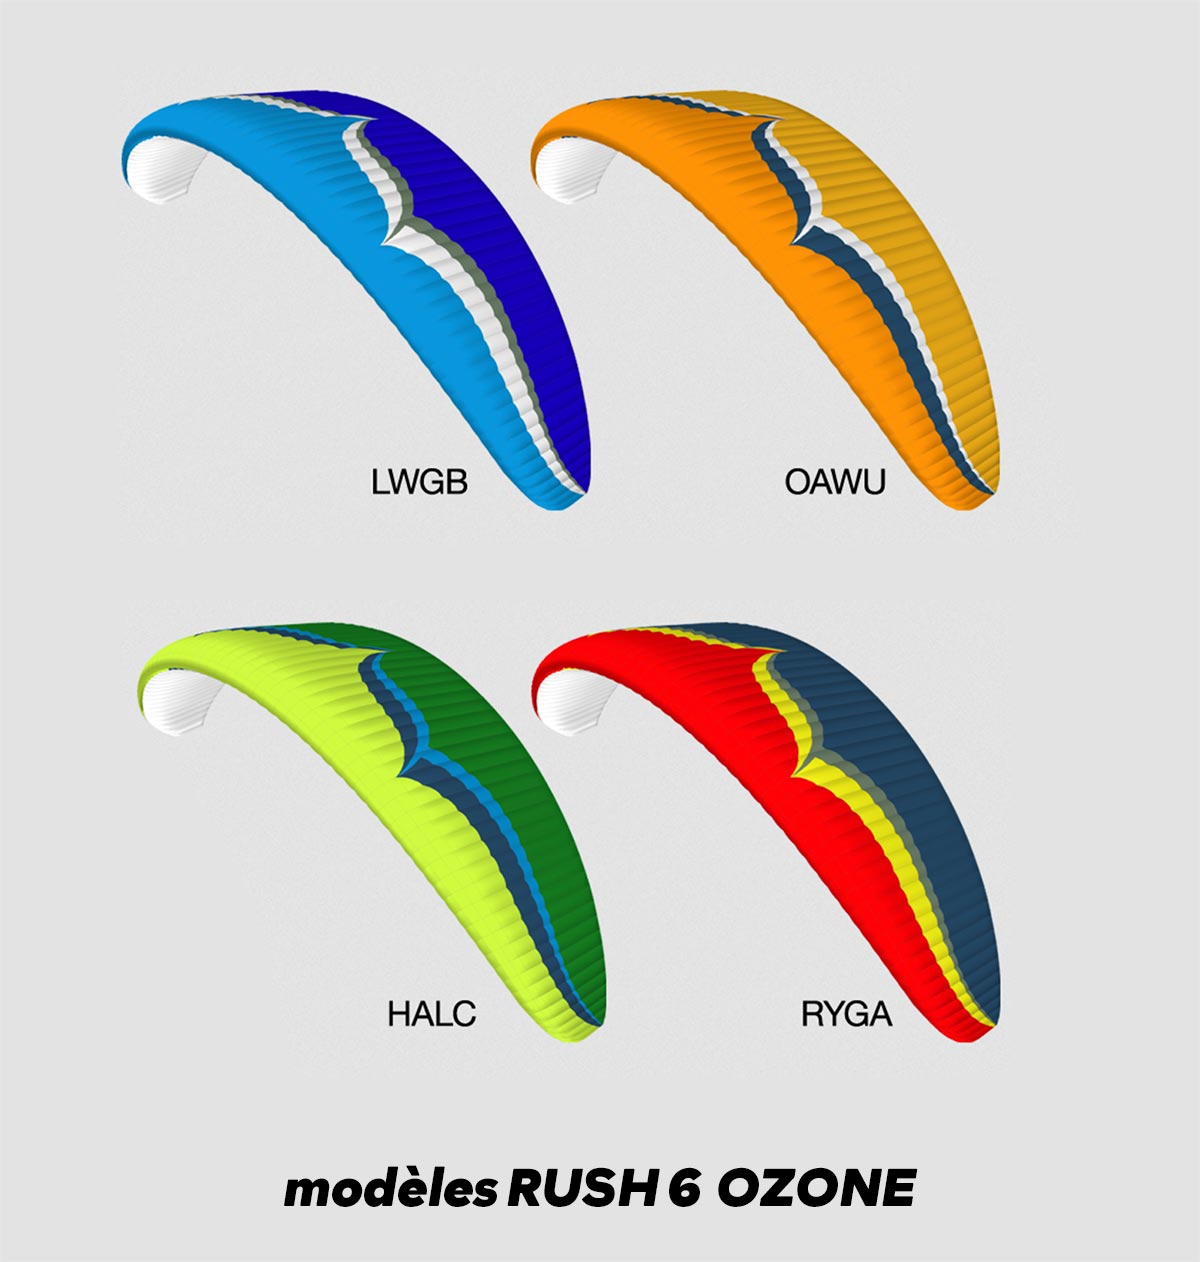 parapente RUSH 6 Ozone, les modèles